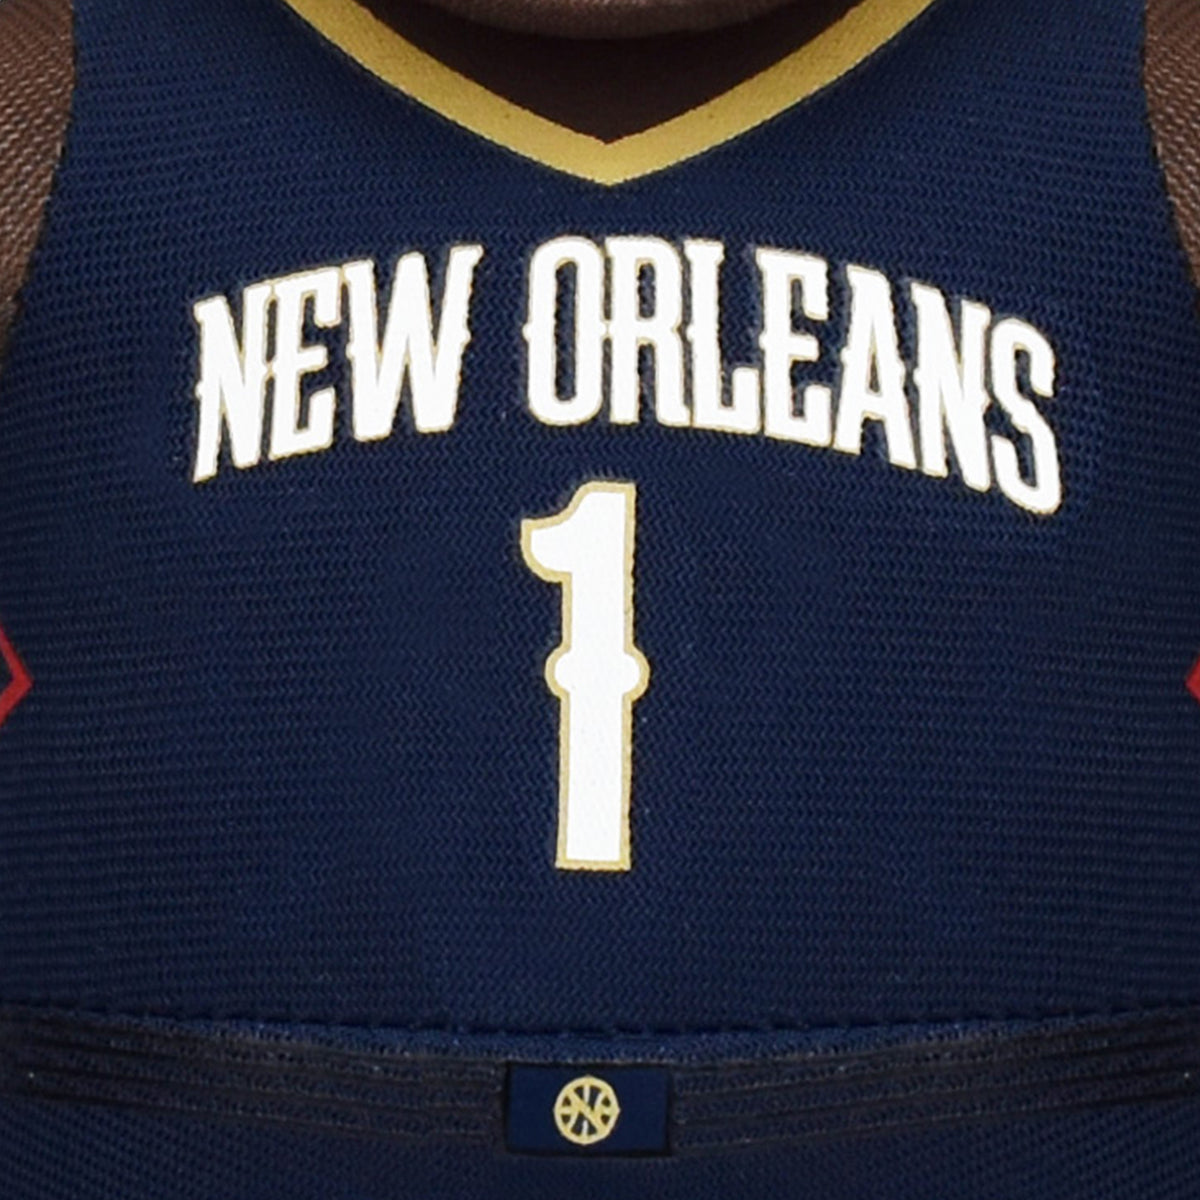 New Orleans Pelicans Zion Williamson 10&quot; Plush Figure